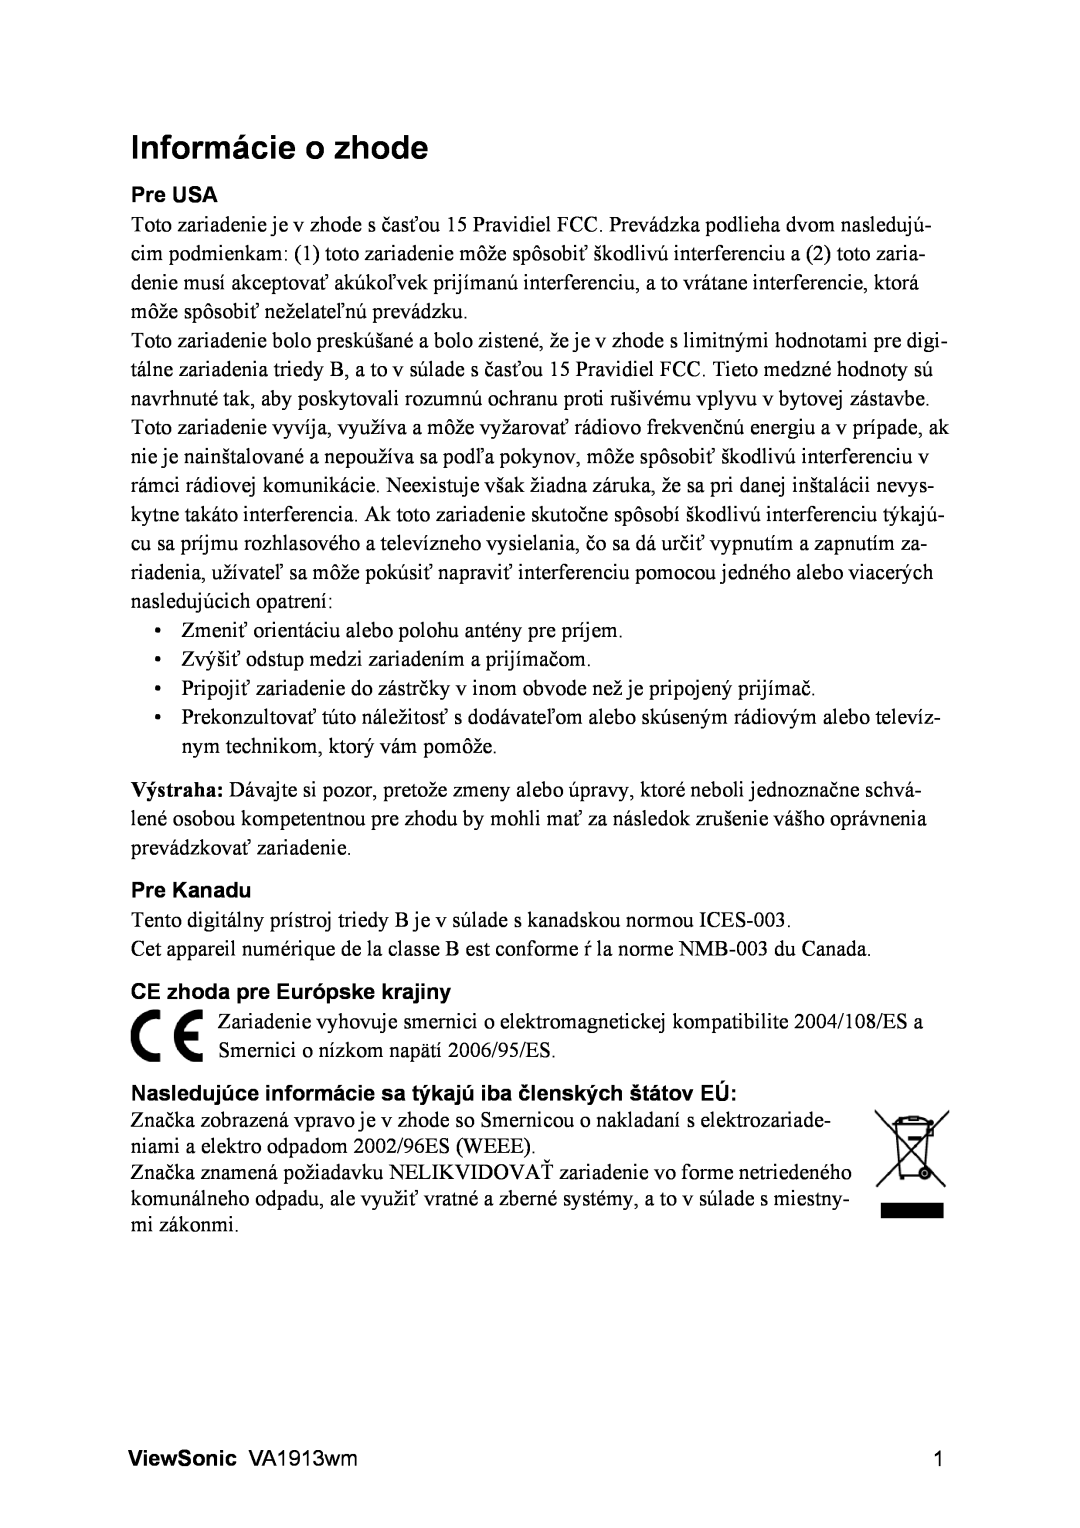 ViewSonic manual Informácie o zhode, Pre USA, Pre Kanadu, CE zhoda pre Európske krajiny, ViewSonic VA1913wm 